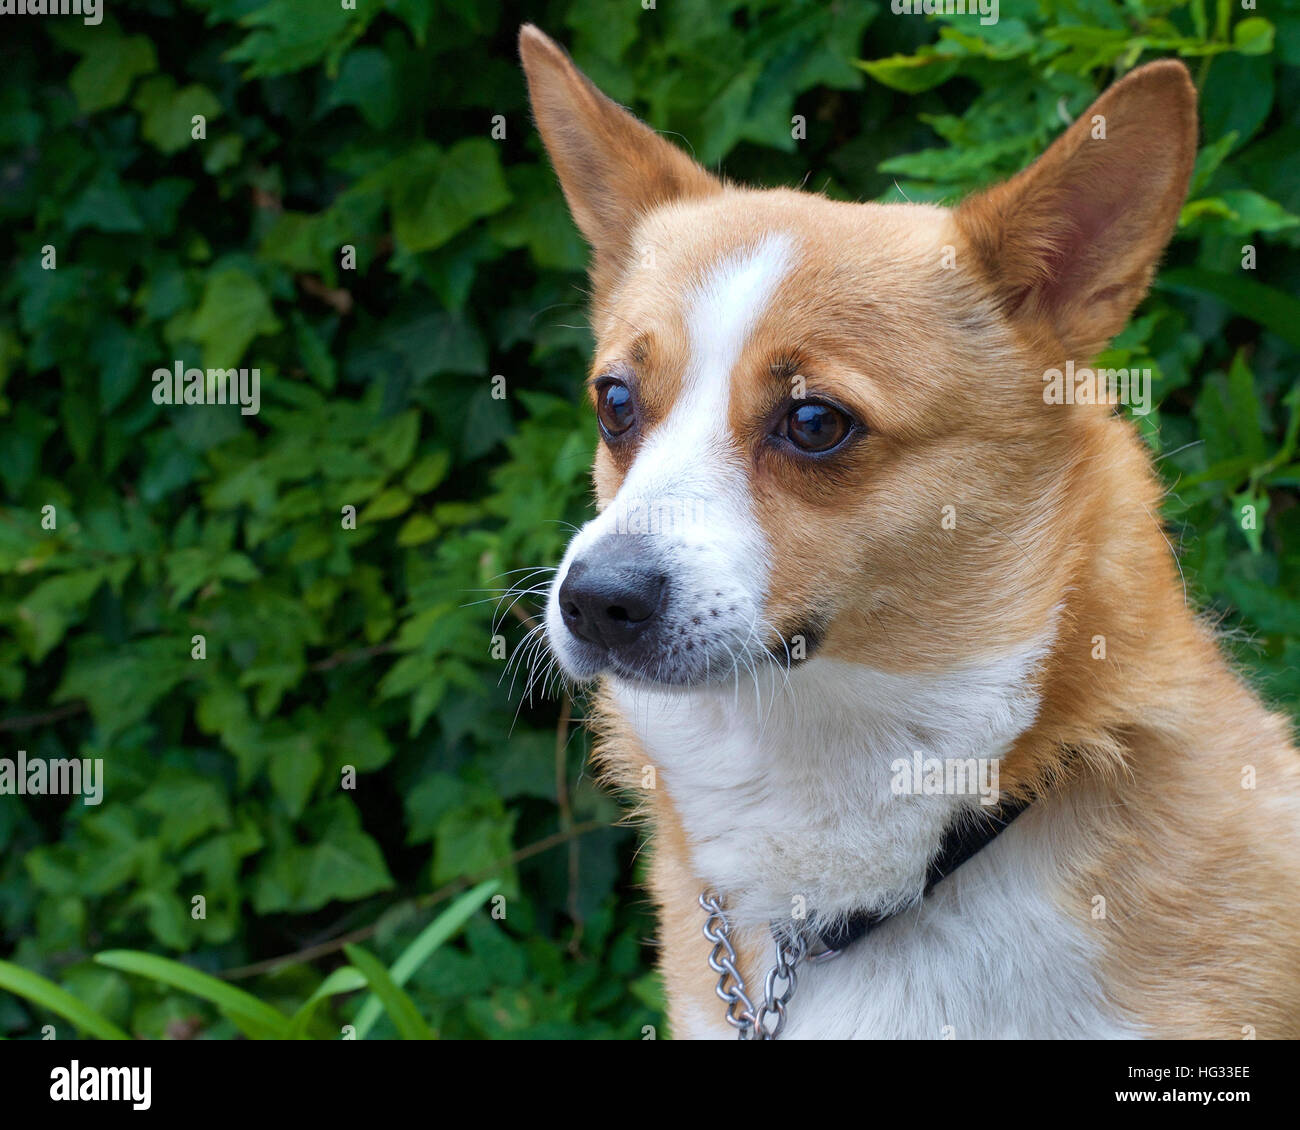 Ritratto di un marrone e bianco Welsh Corgi cane, fogliame verde in background con spazio di copia Foto Stock